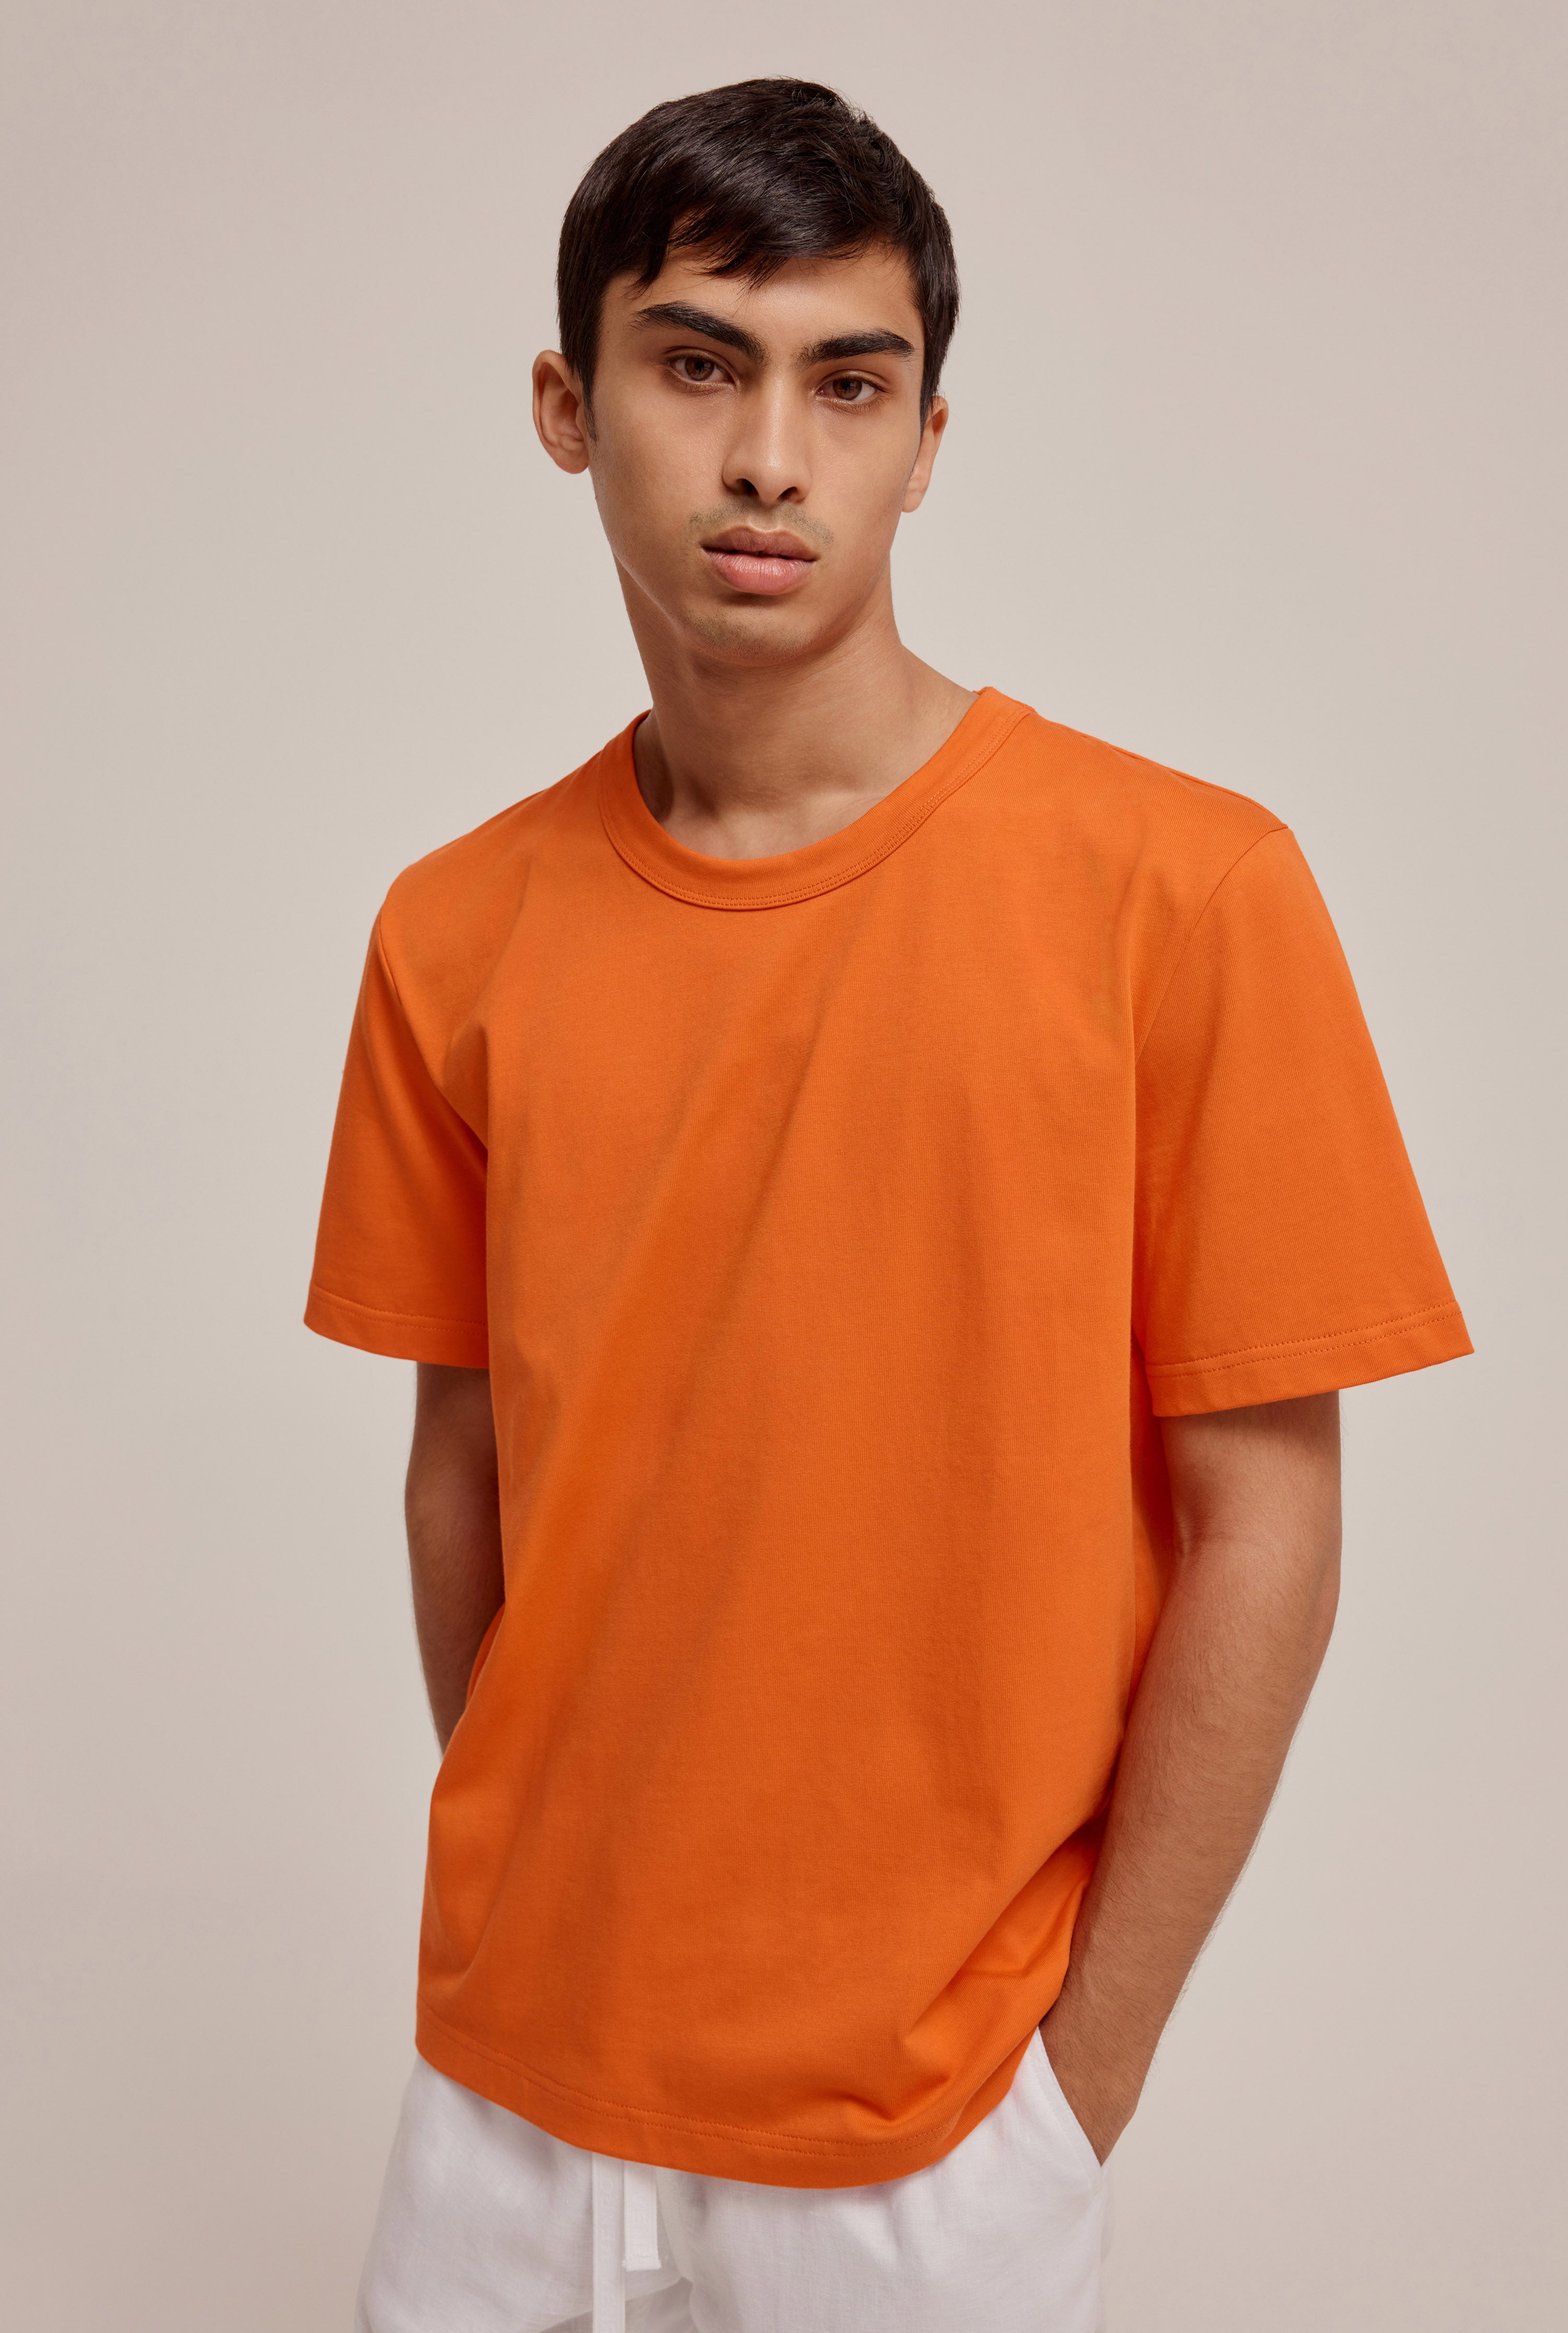 Weight T-Shirt in Red Orange | Venroy | Premium Leisurewear designed in Australia